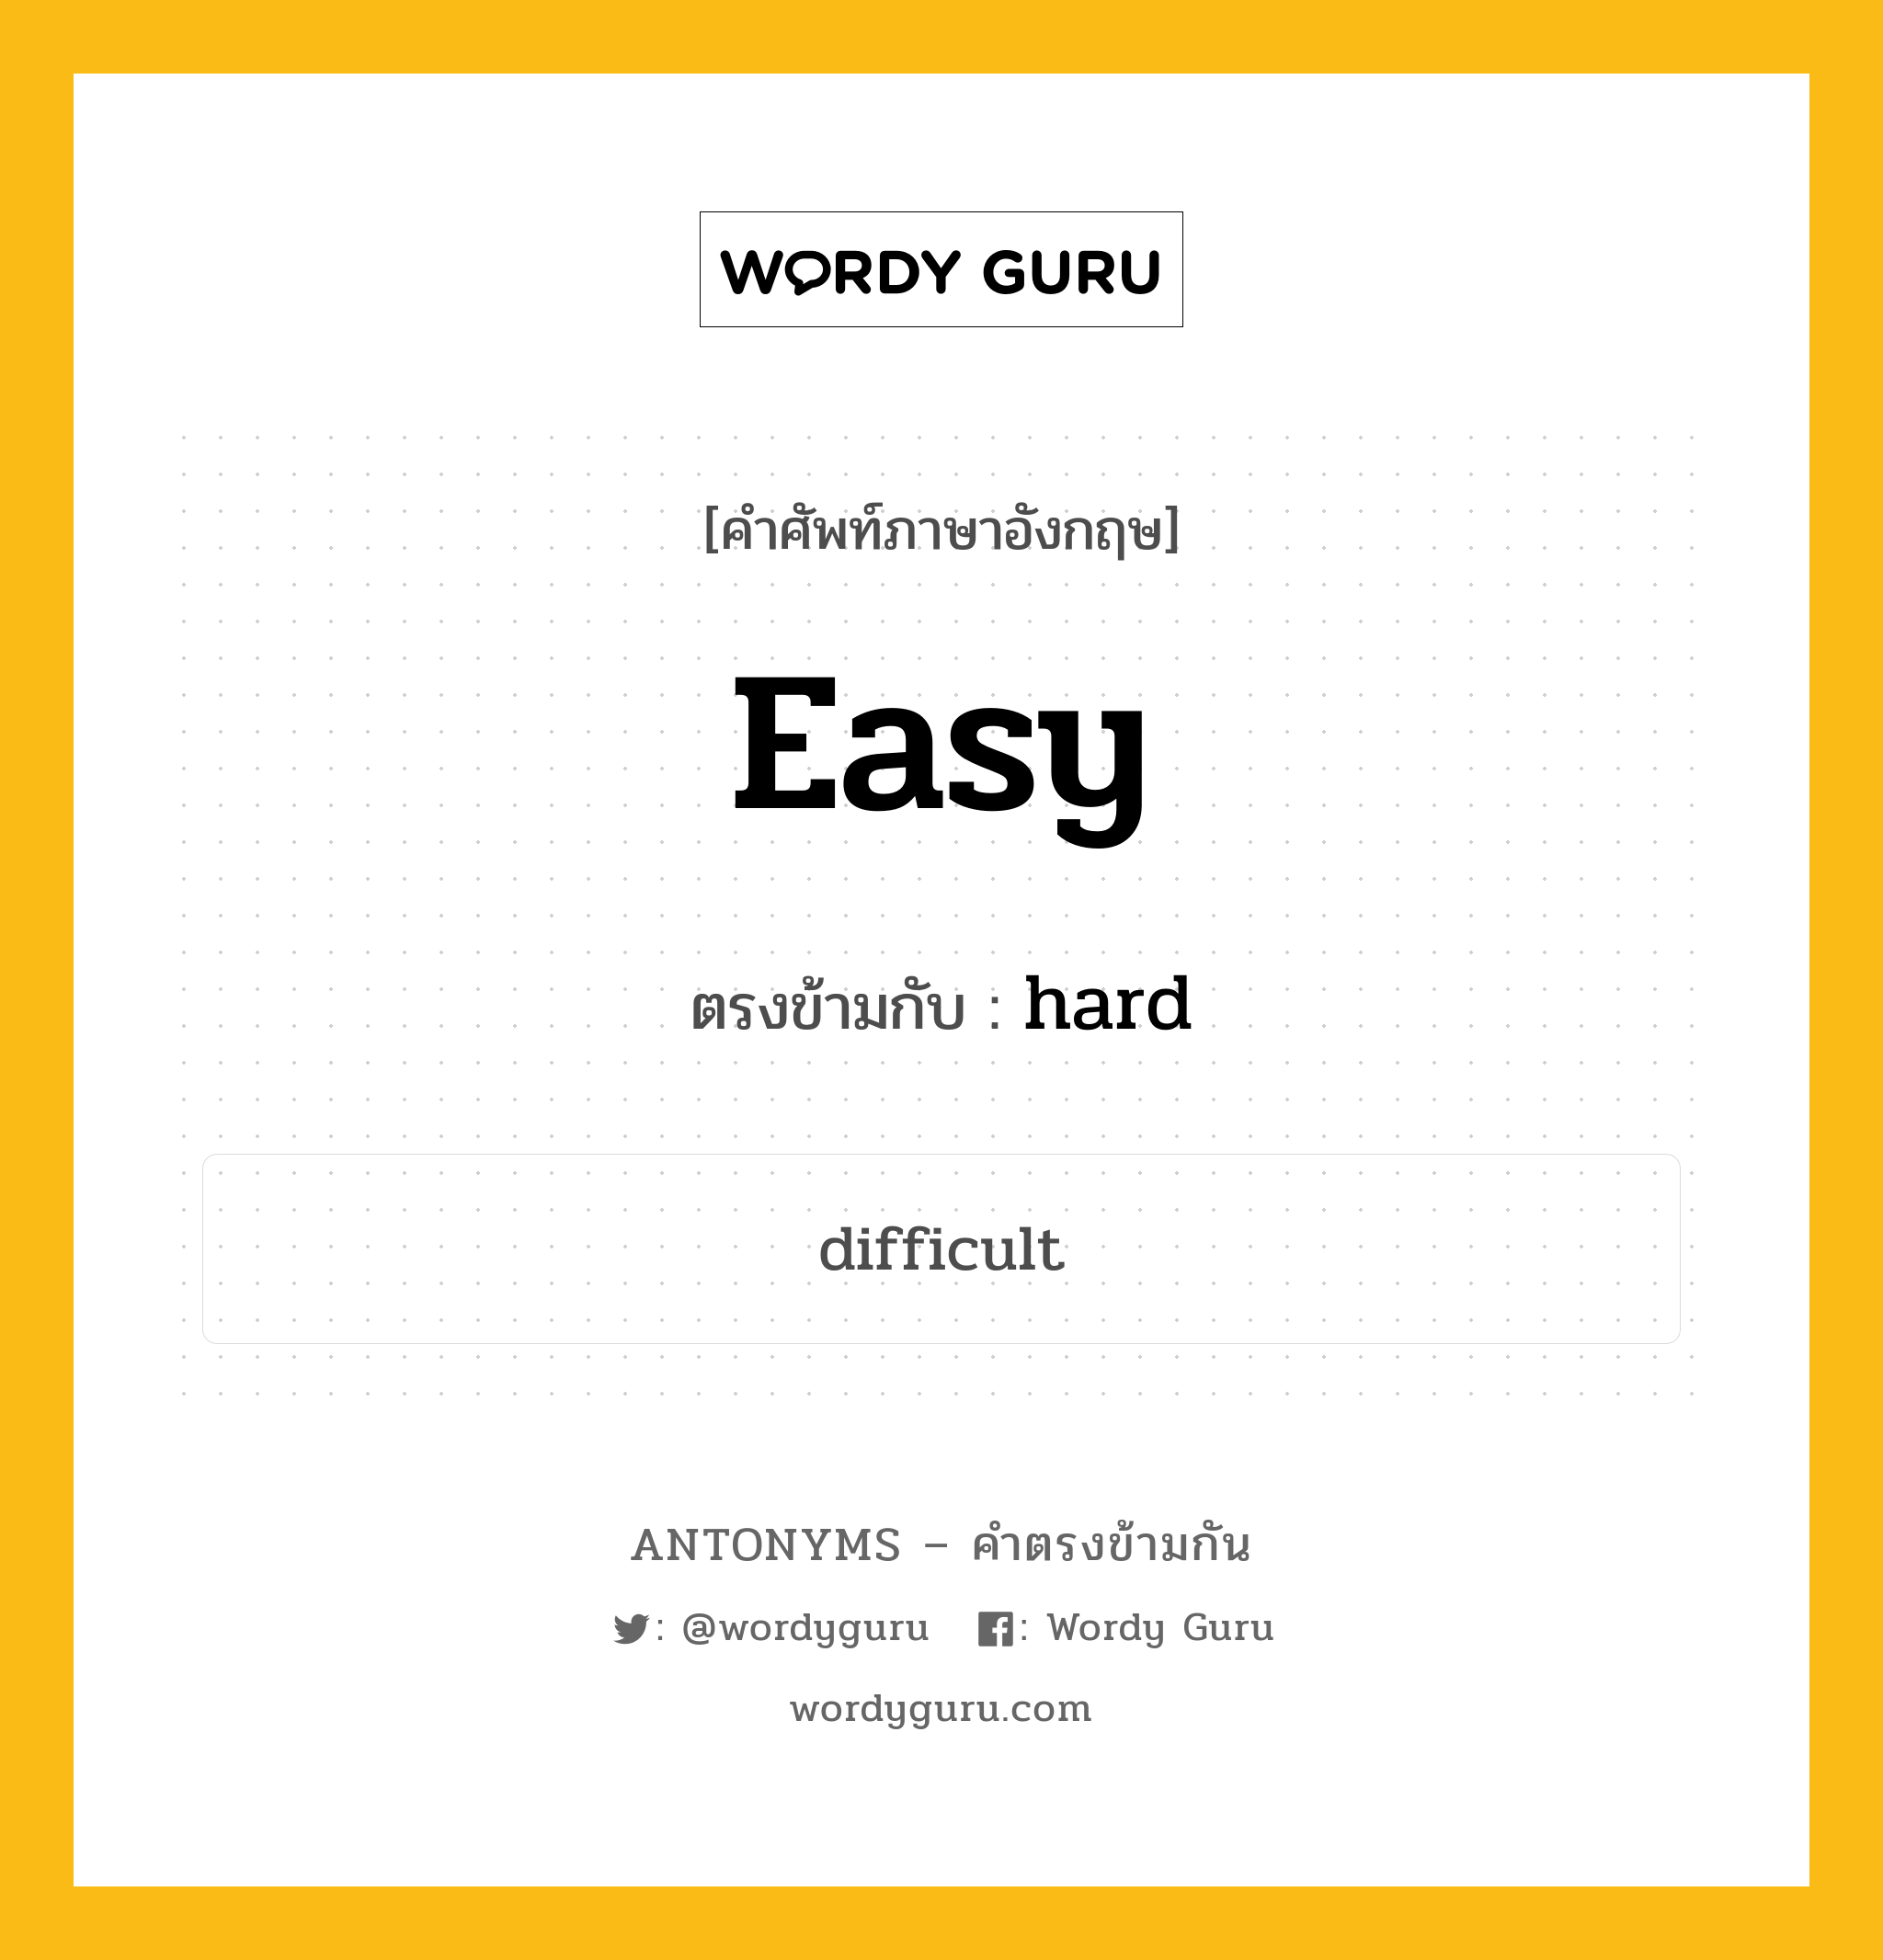 easy เป็นคำตรงข้ามกับคำไหนบ้าง?, คำศัพท์ภาษาอังกฤษ easy ตรงข้ามกับ hard หมวด hard